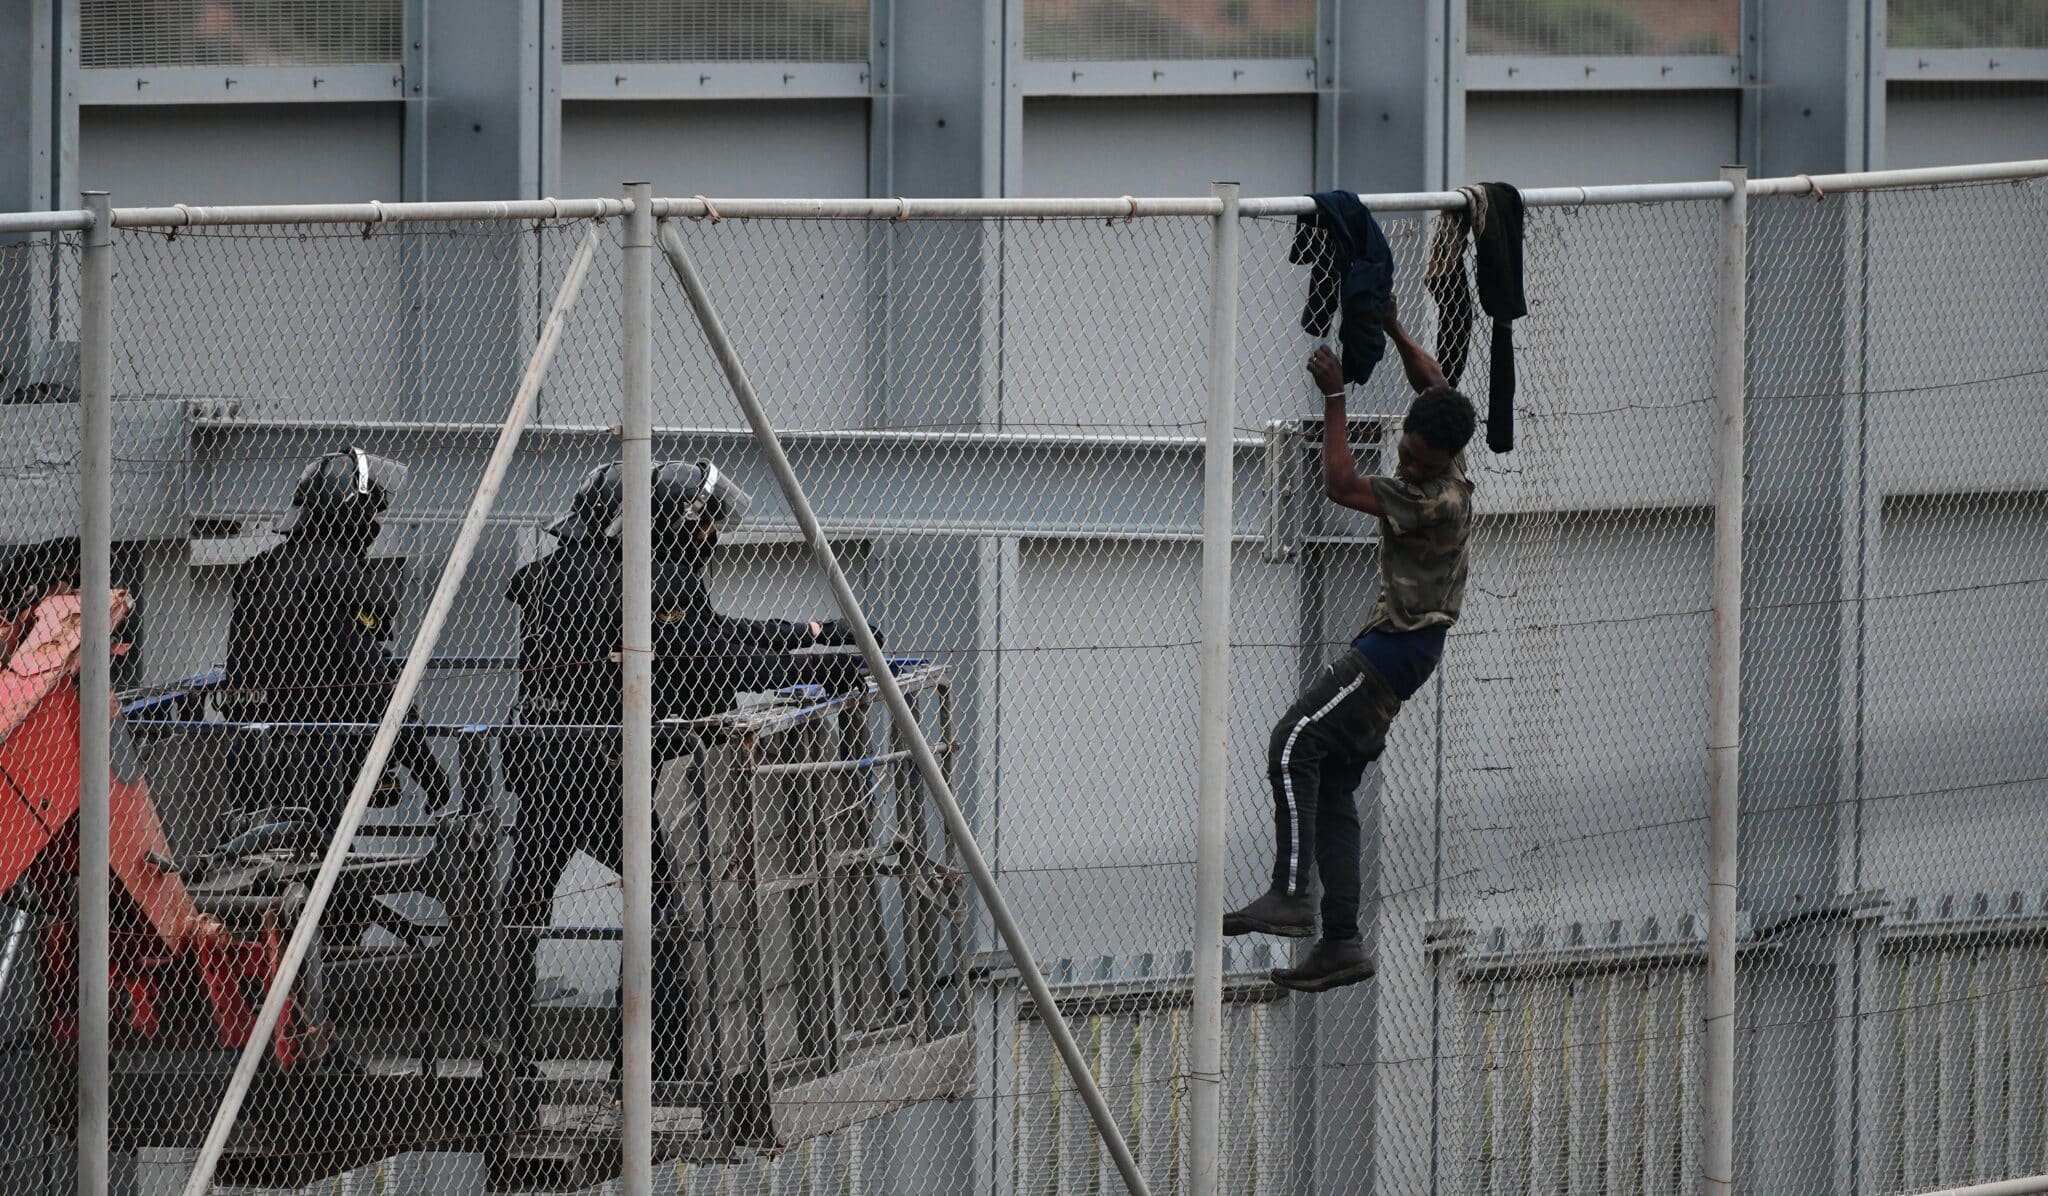 Agentes de la Guardia Civil se acercan a un migrante encaramado a la valla de Ceuta el pasado mes de abril.